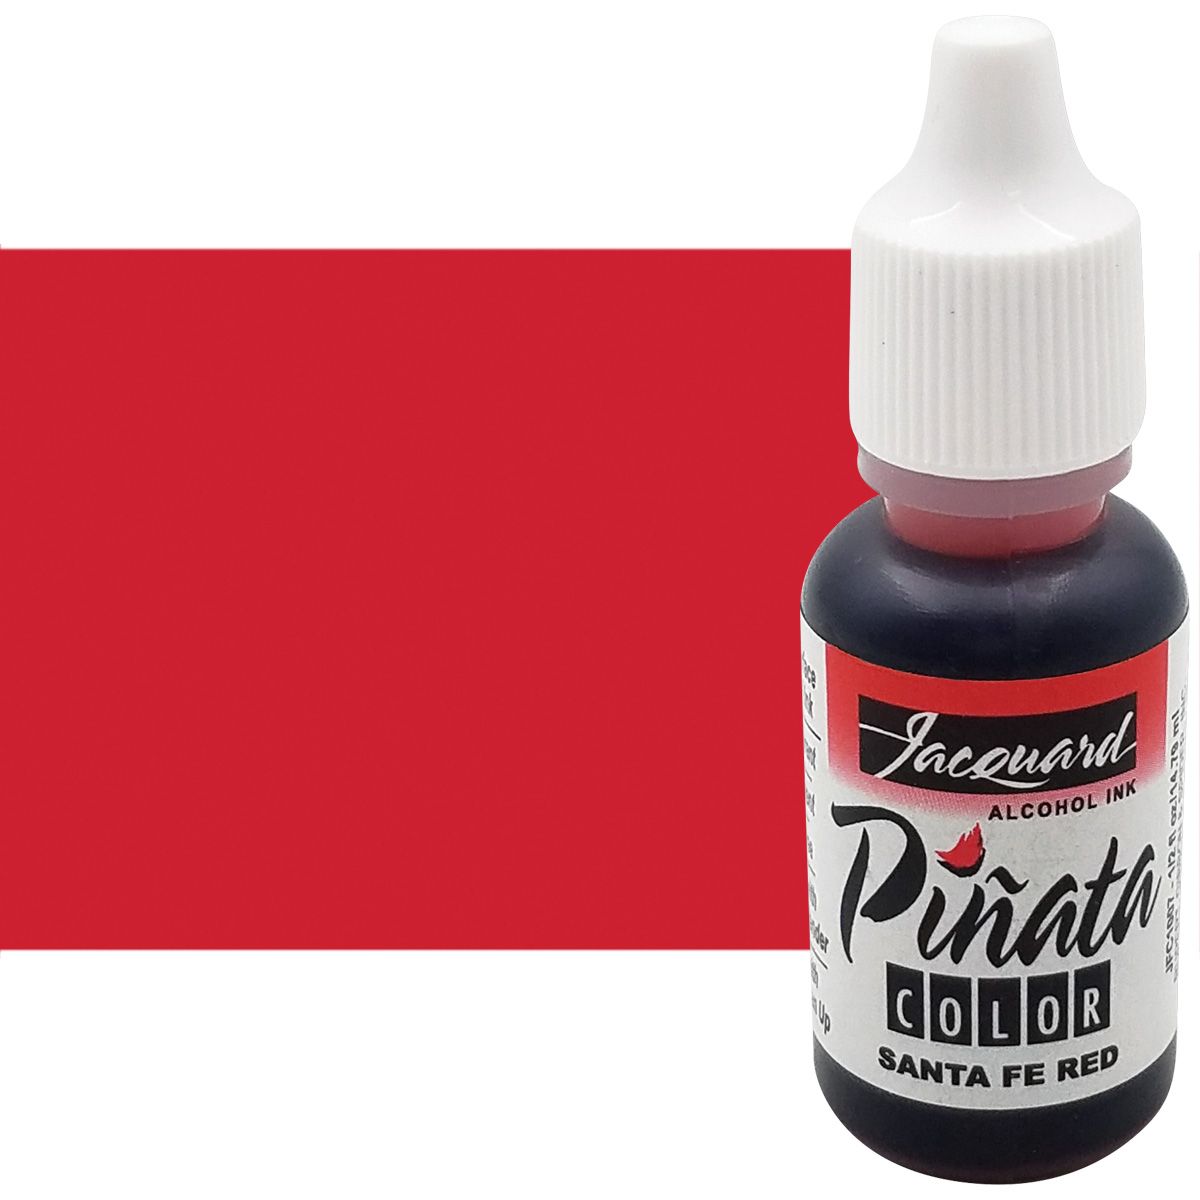 Jacquard Pinata Alcohol Ink - Santa Fe Red, 1/2oz